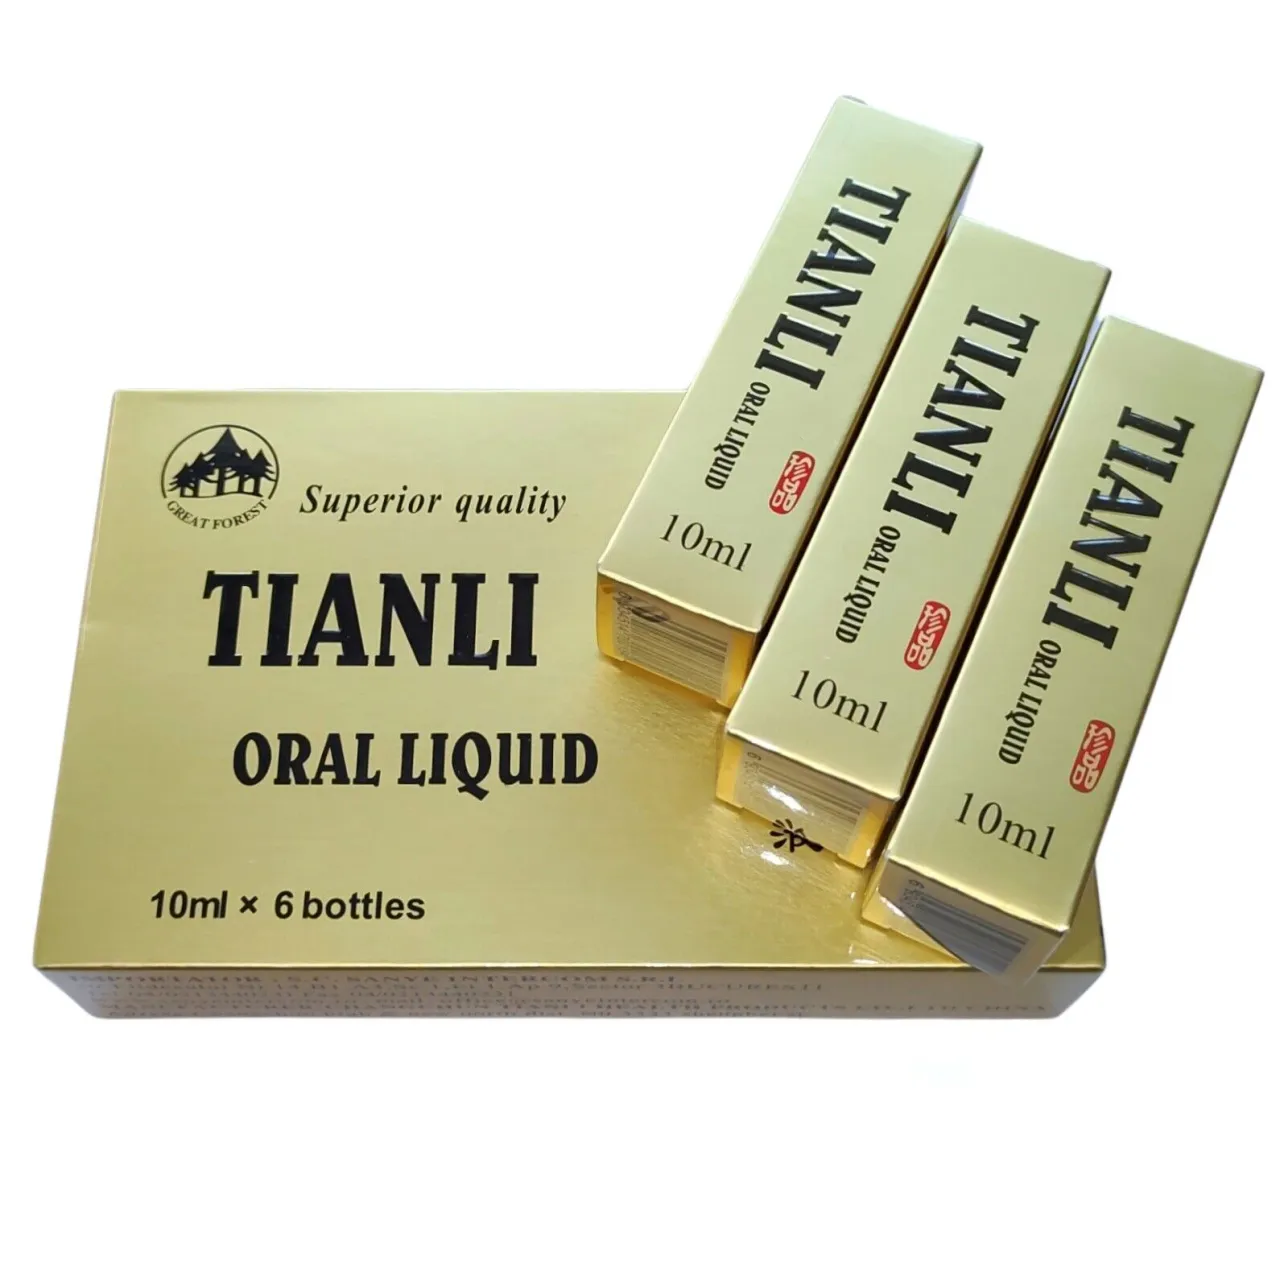 Tianli Oral Liquid